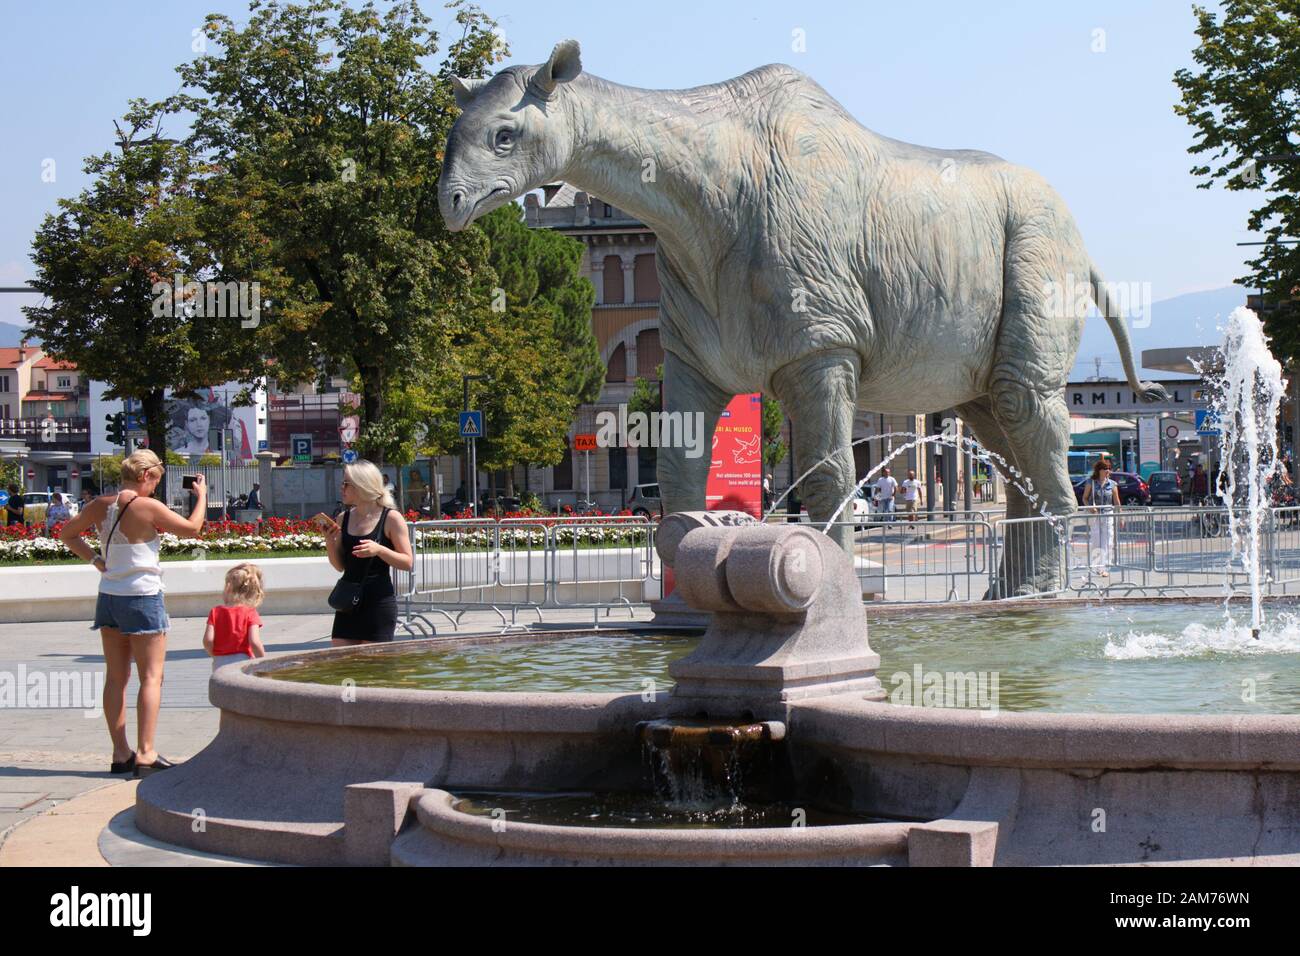 Bergamo, Italia - 05 agosto 2018: persone che fanno la foto con la statua di dinosauro nei pressi della stazione ferroviaria principale. Centenario della scienza naturale Mu Foto Stock